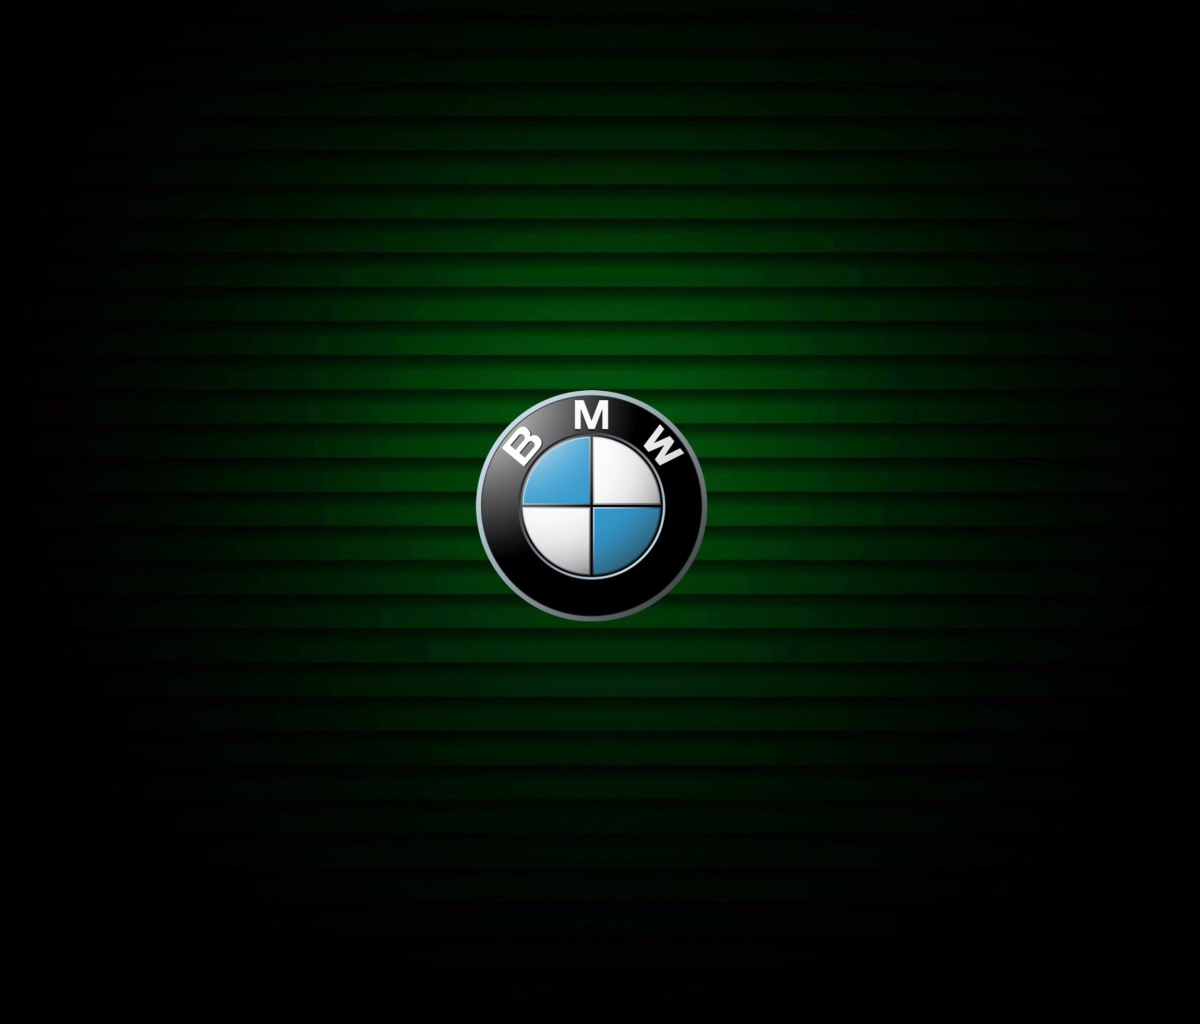 Das BMW Emblem Wallpaper 1200x1024